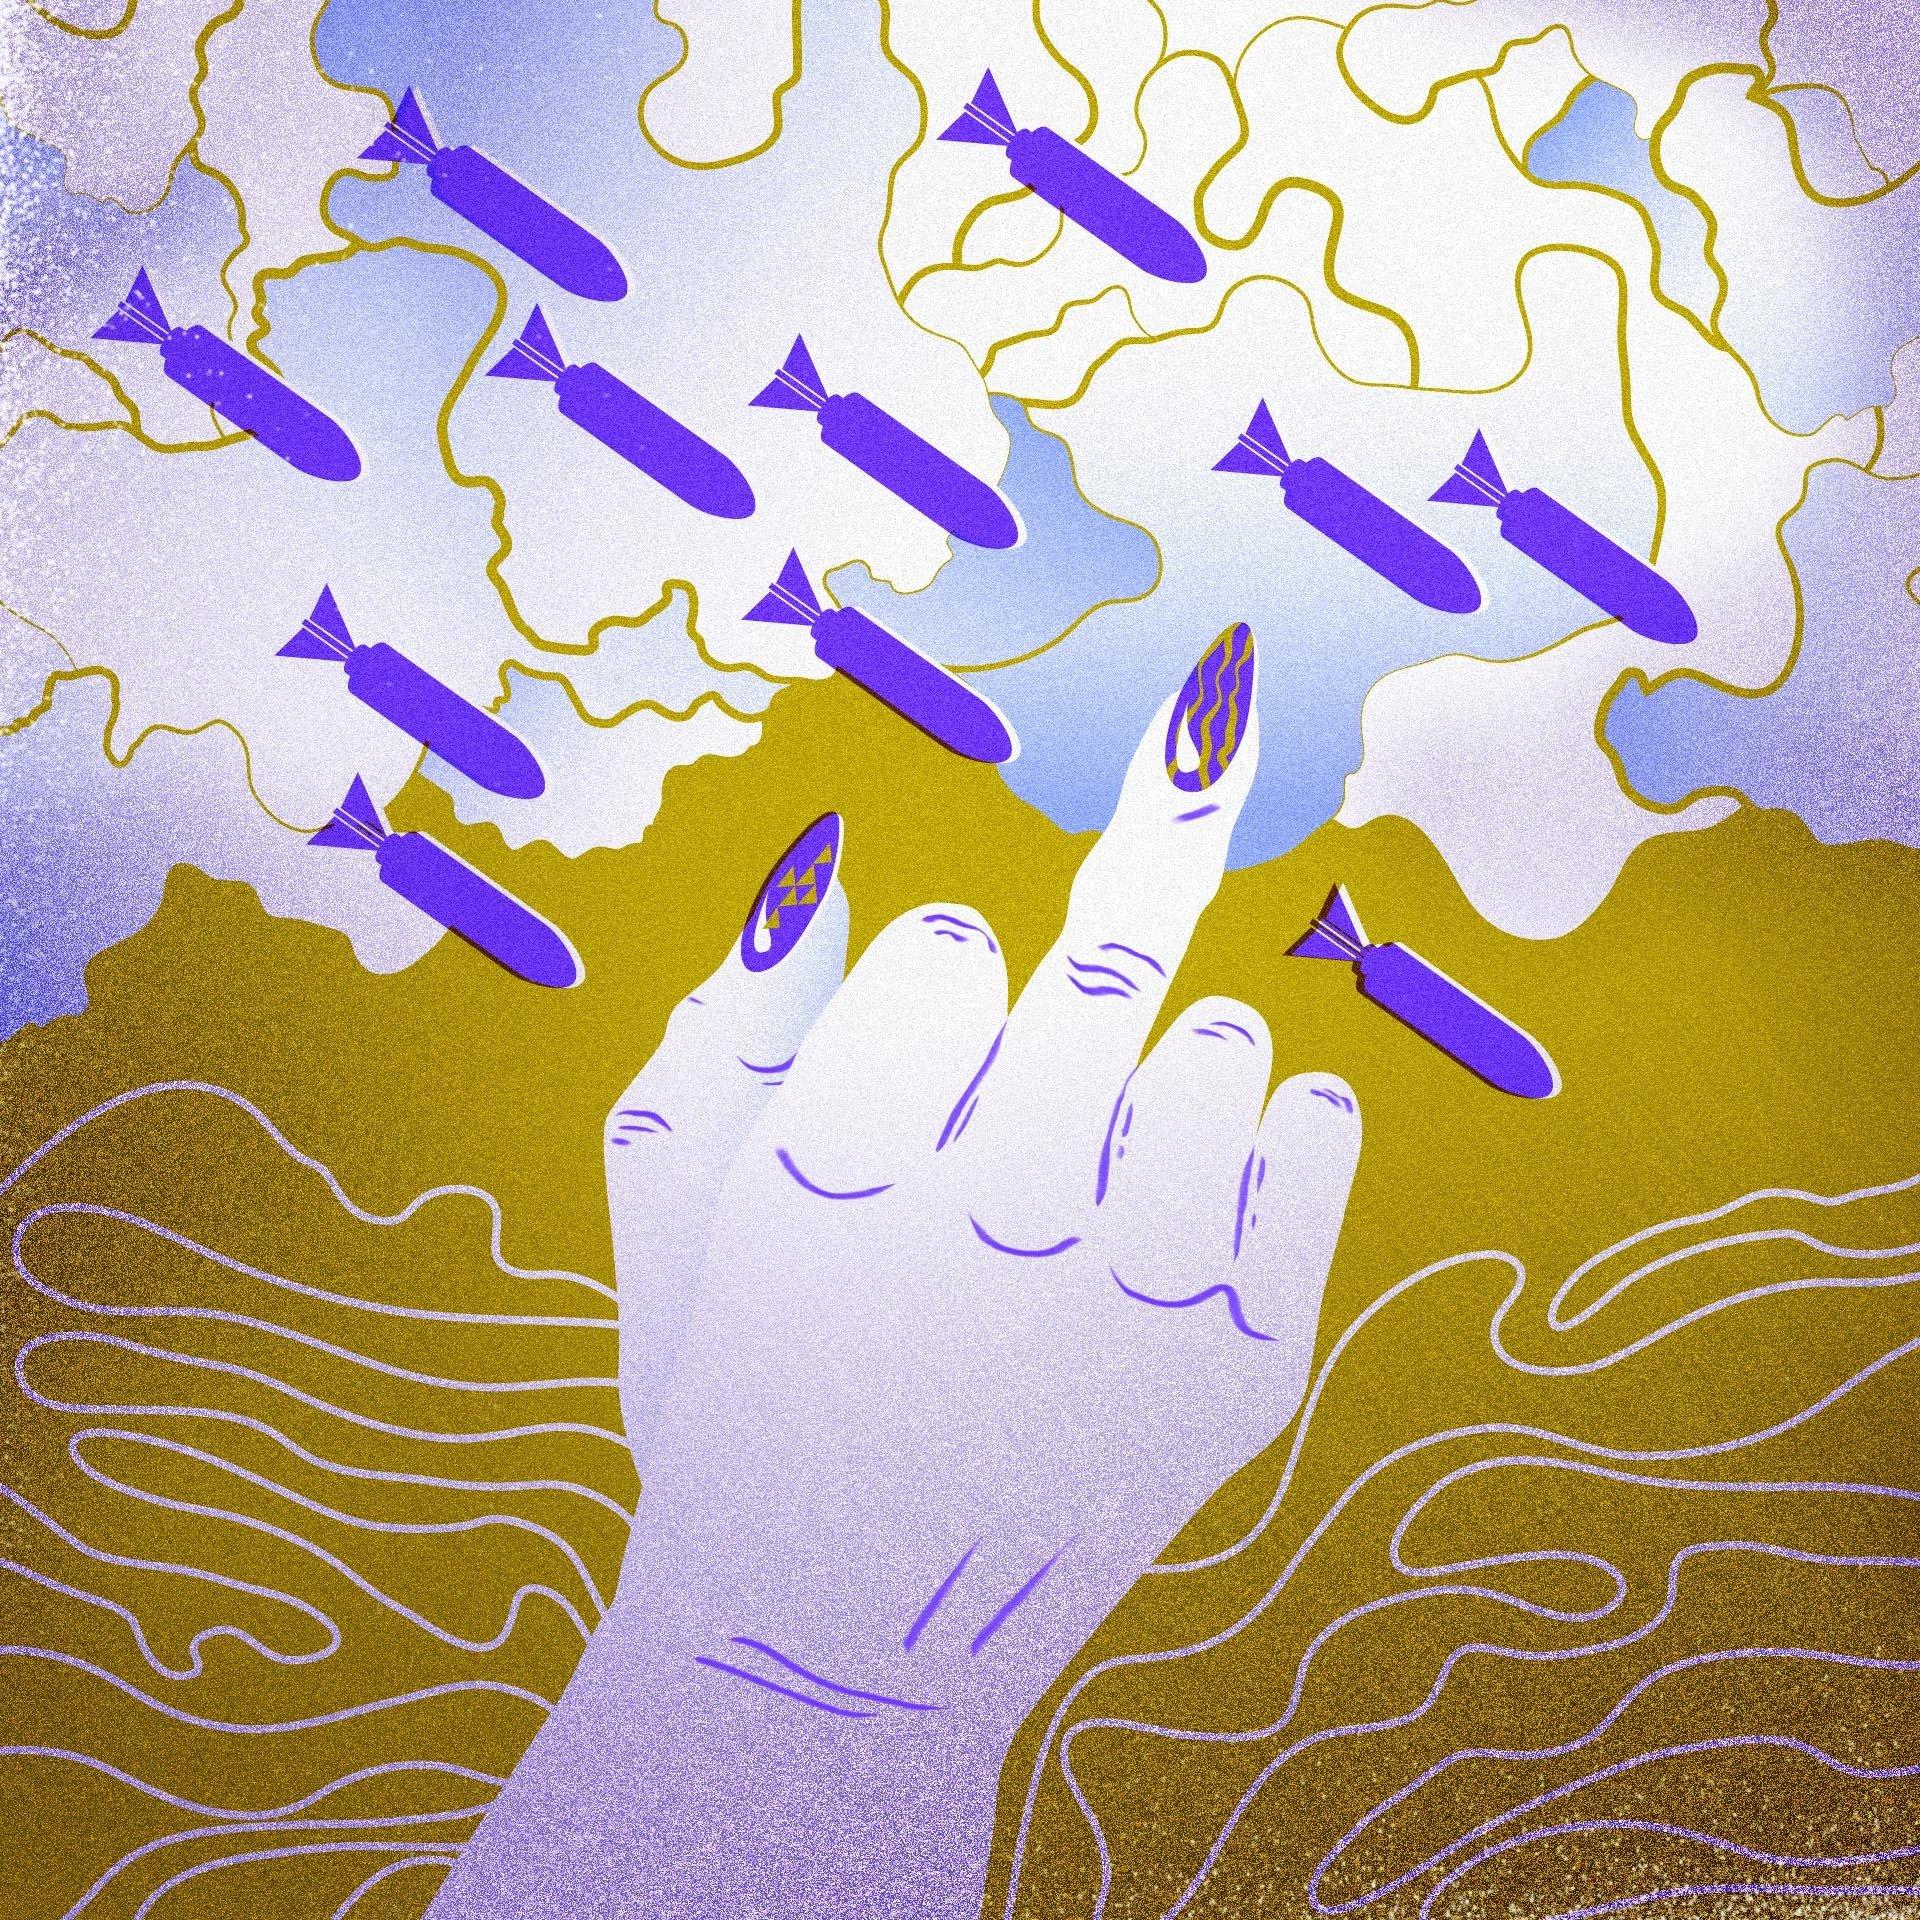 Ilustracja przedstawiająca kobiecą dłoń z wyciągnięty, środkowym palcem, z pomalowanym paznokciem, na tle lecących pocisków